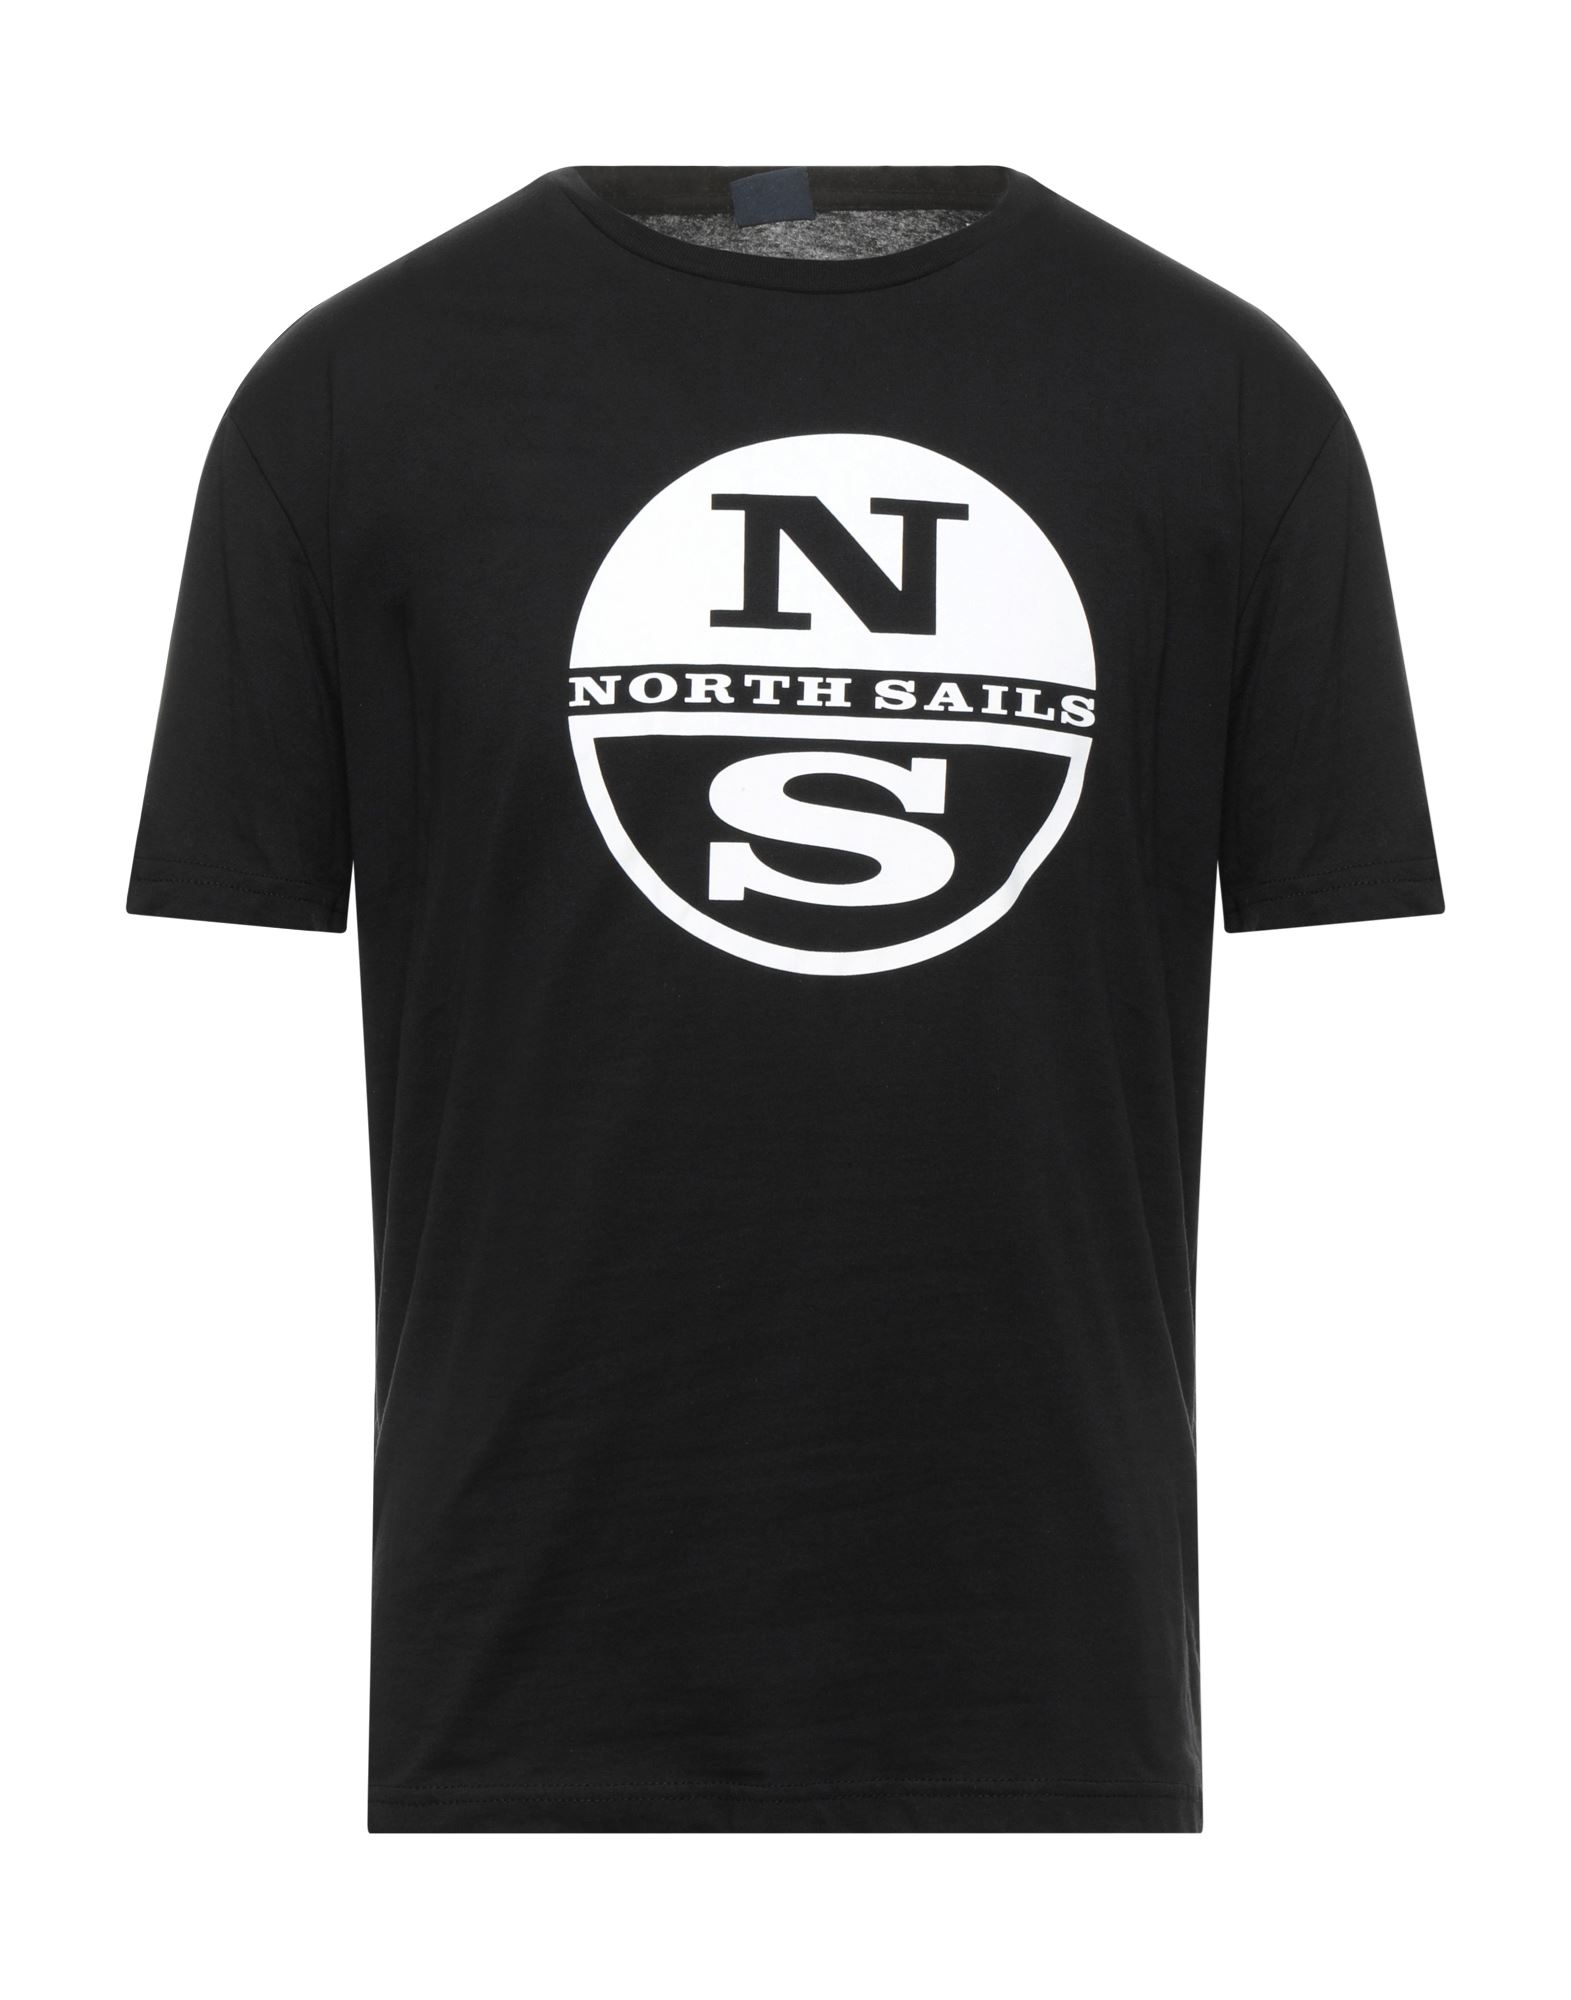 North Sails Man T-shirt Black Size Xs Cotton